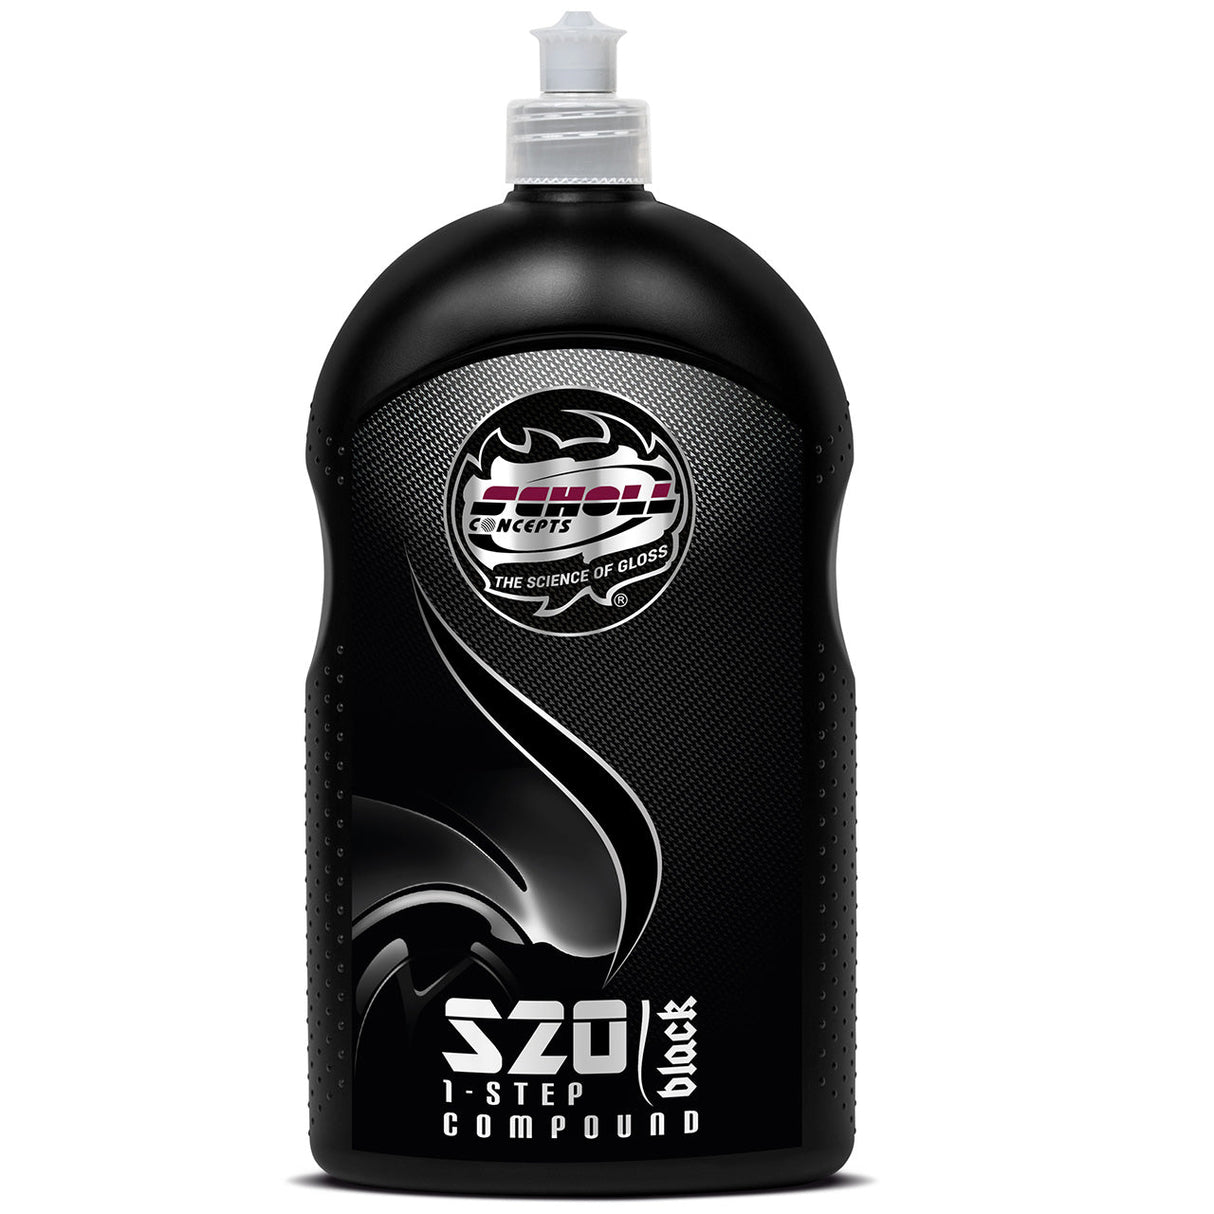 Scholl S20 Black Schleifpaste 1 Ltr. - Autopflege kaufenWachse, Polituren & Schutzmittel für FahrzeugeScholl Concepts103191